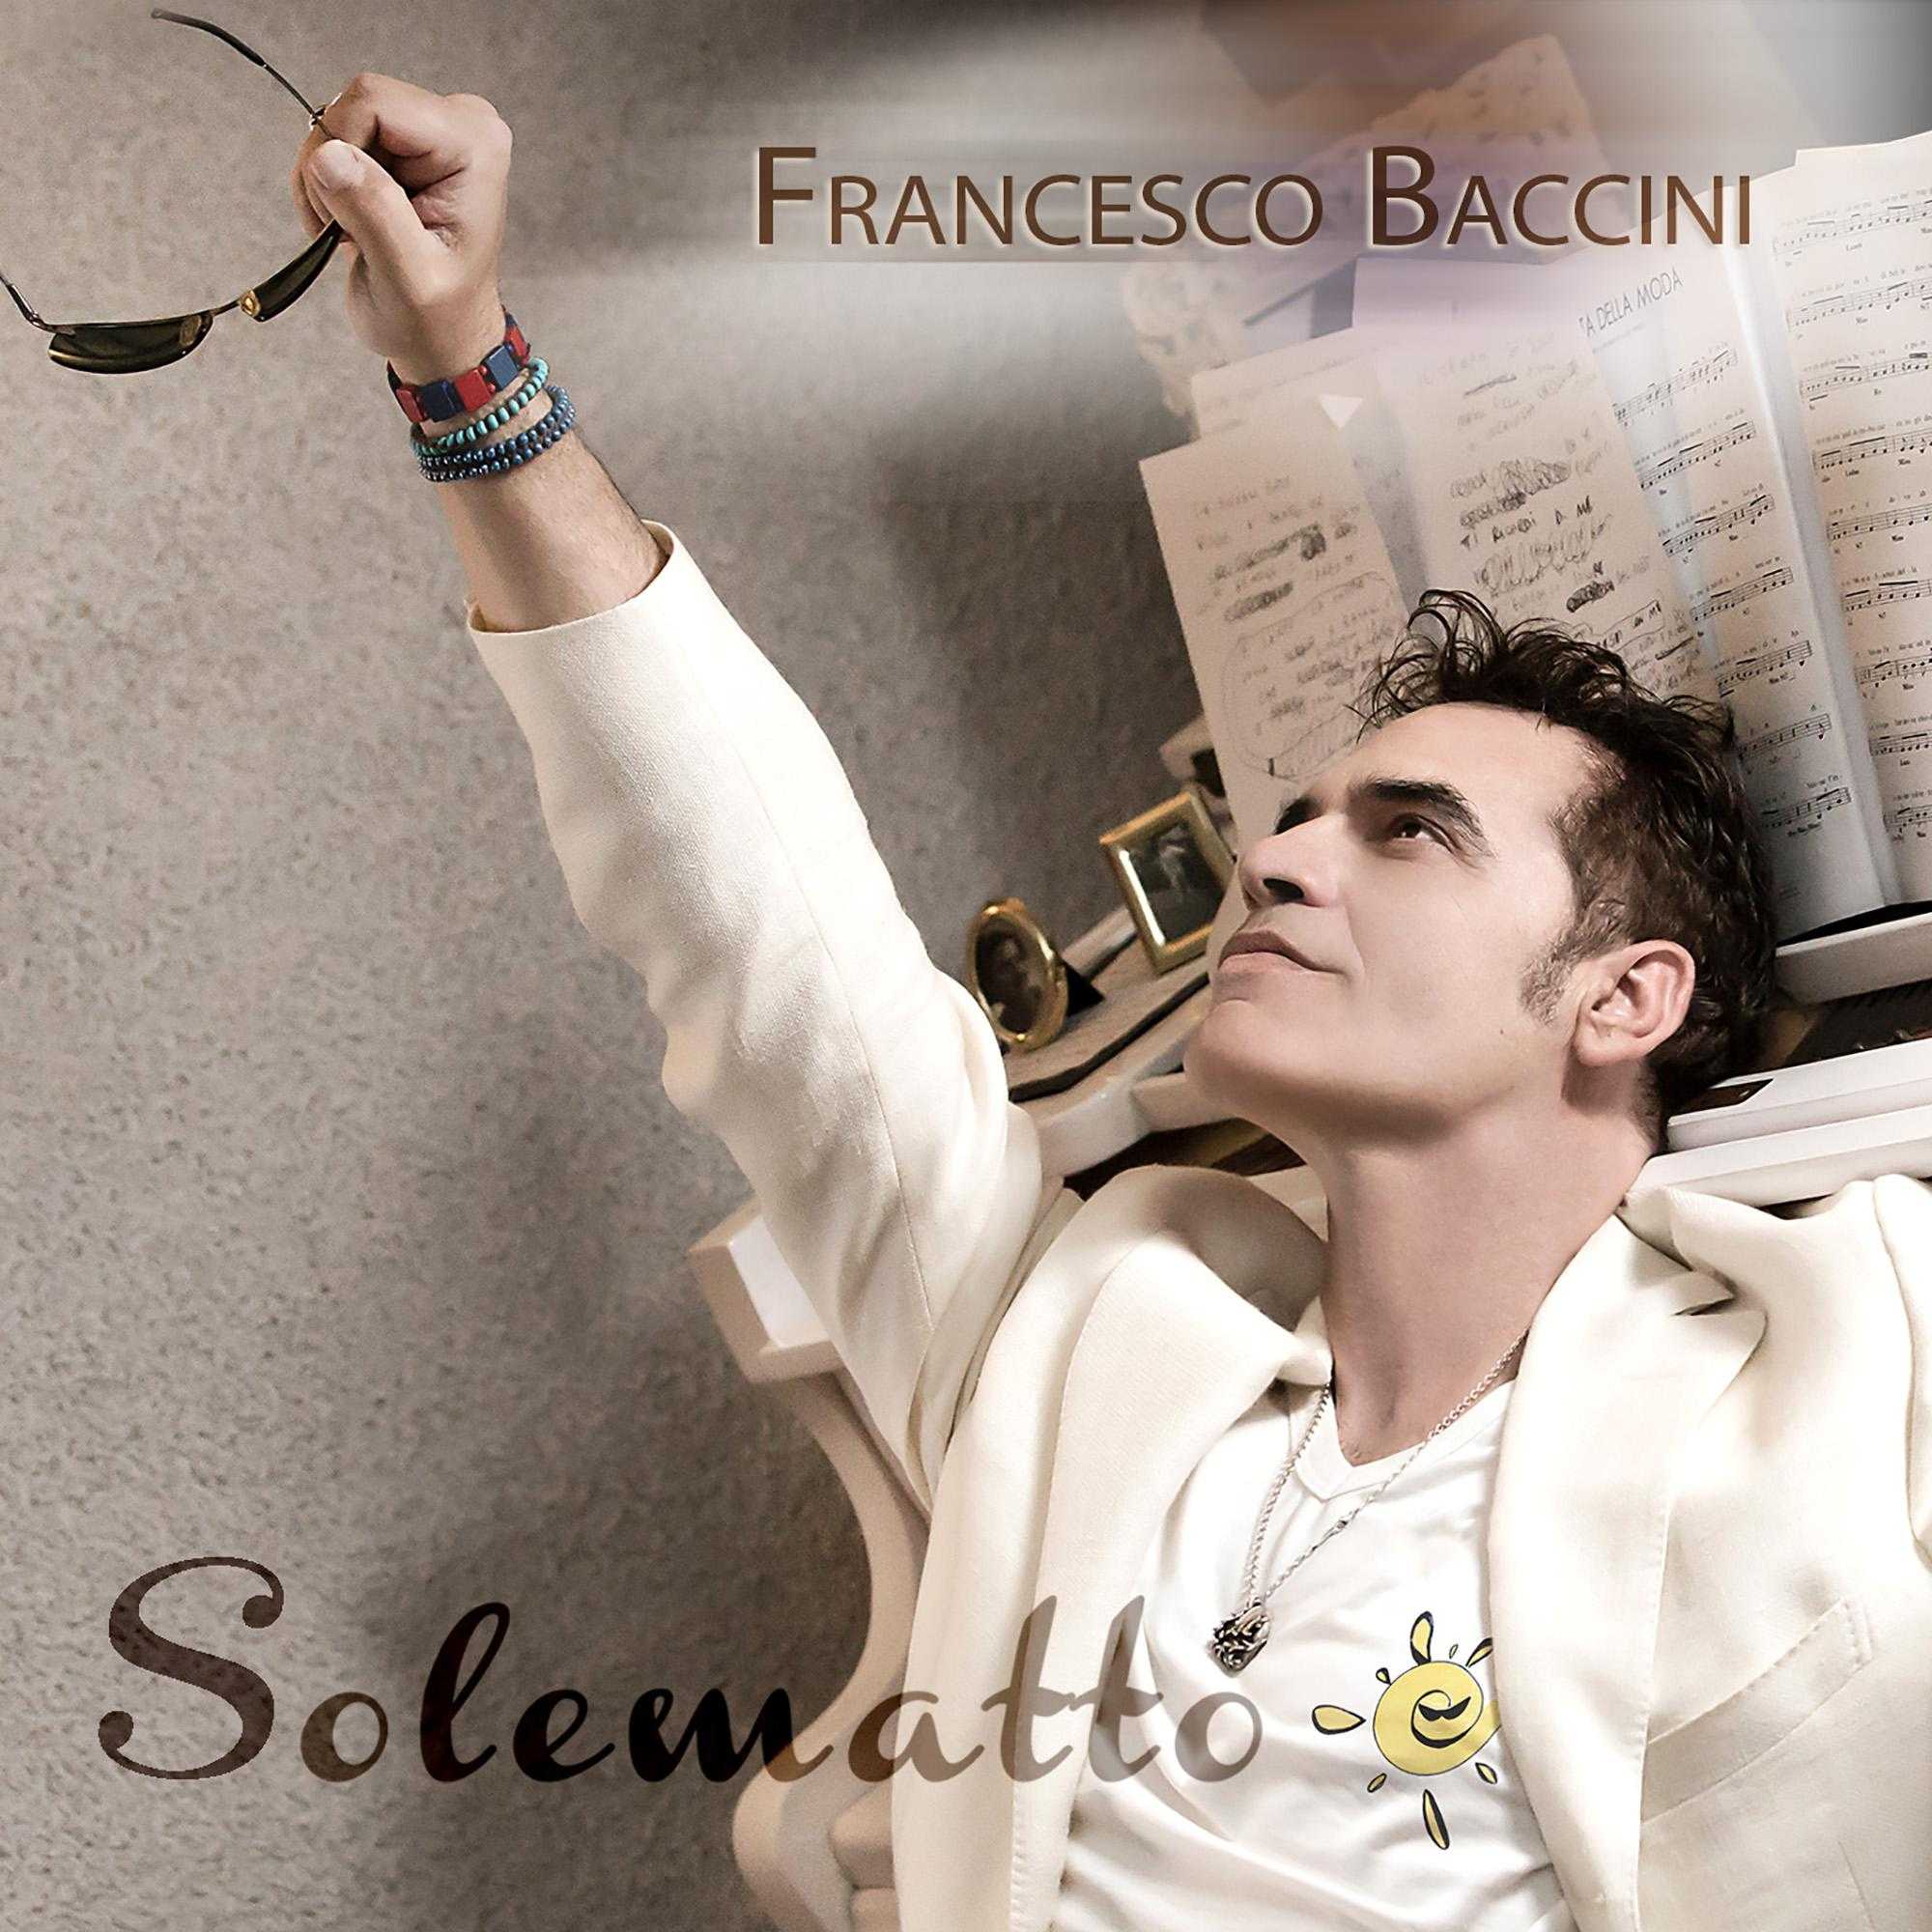 Francesco Baccini esce col nuovo singolo "Solematto"